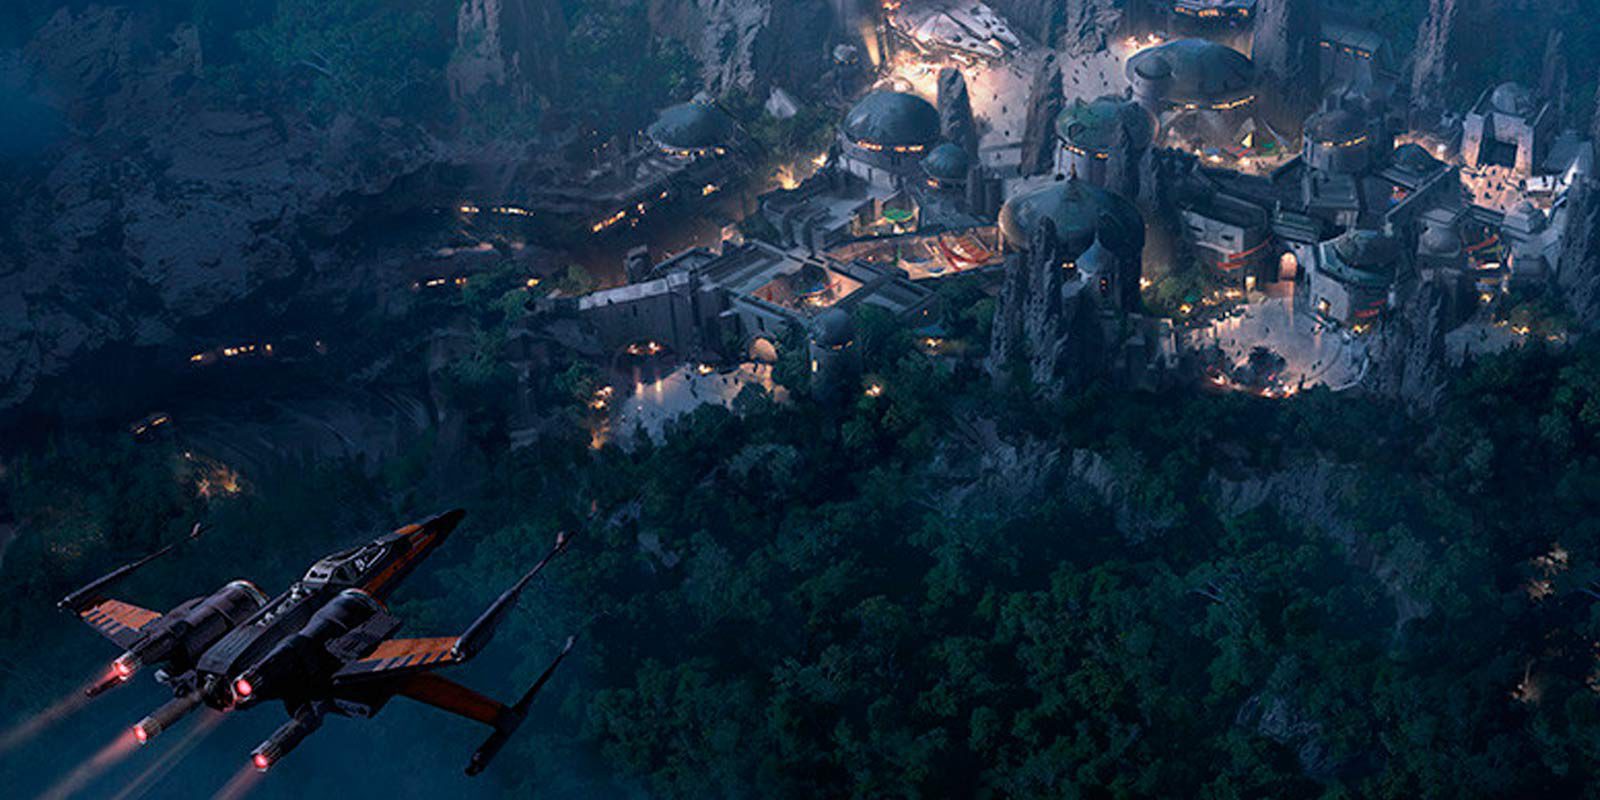 Disney abrirá 'Star Wars Land' en sus parques temáticos en 2019